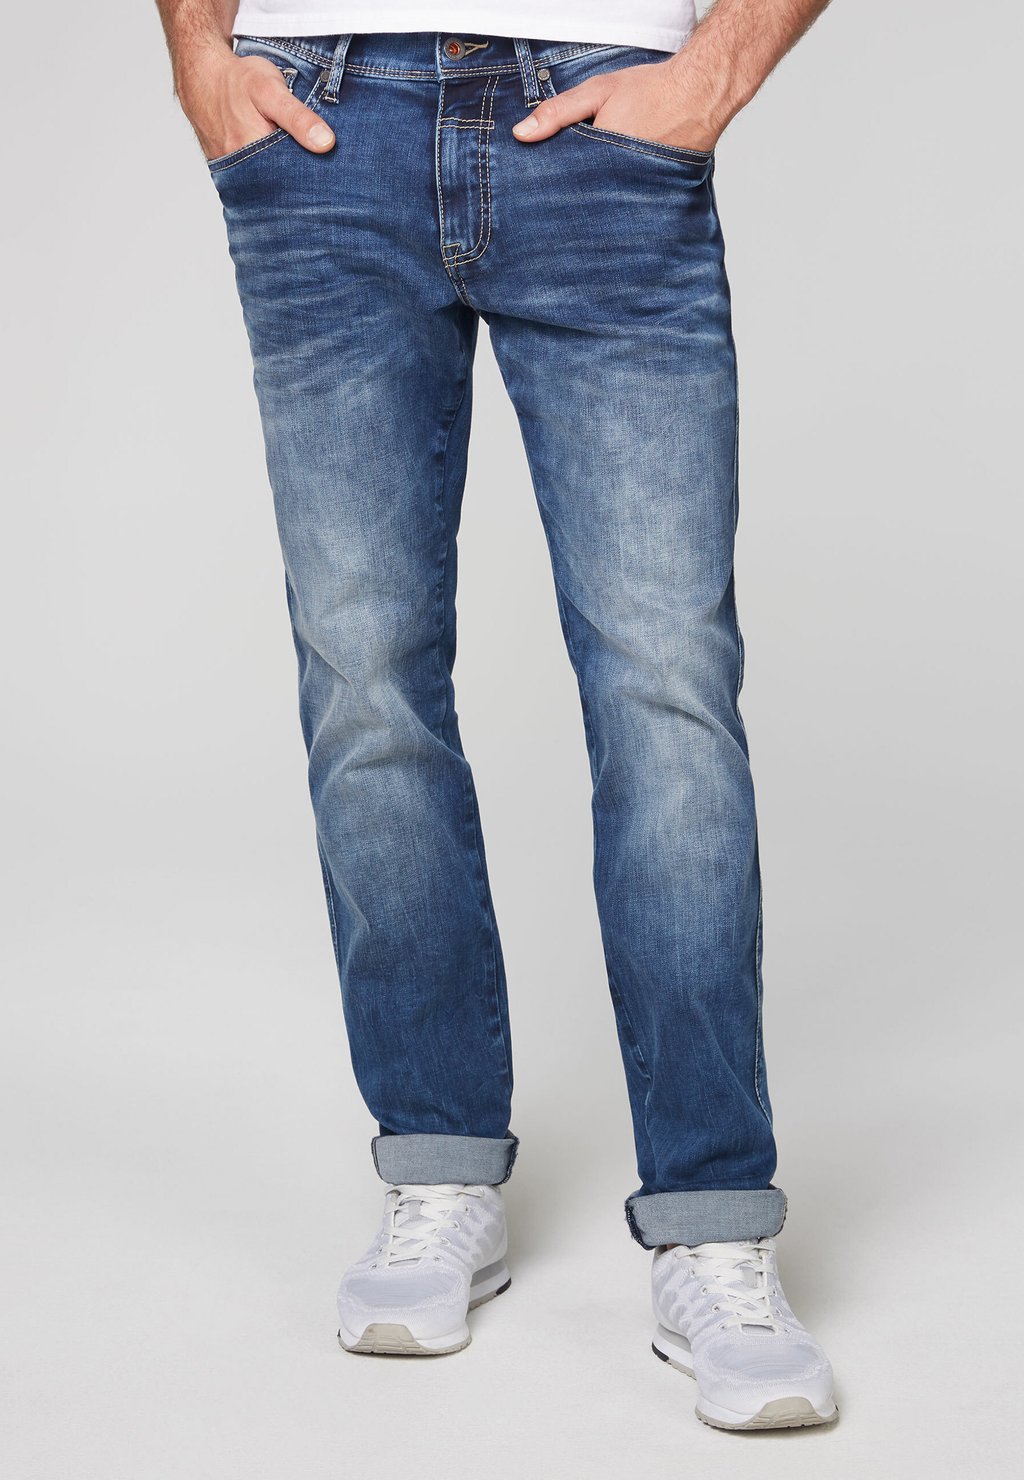 Джинсы-сигареты Comfort-Flex Jeans Da:Vd Camp David, цвет blue vintage прямые джинсы camp david цвет light vintage